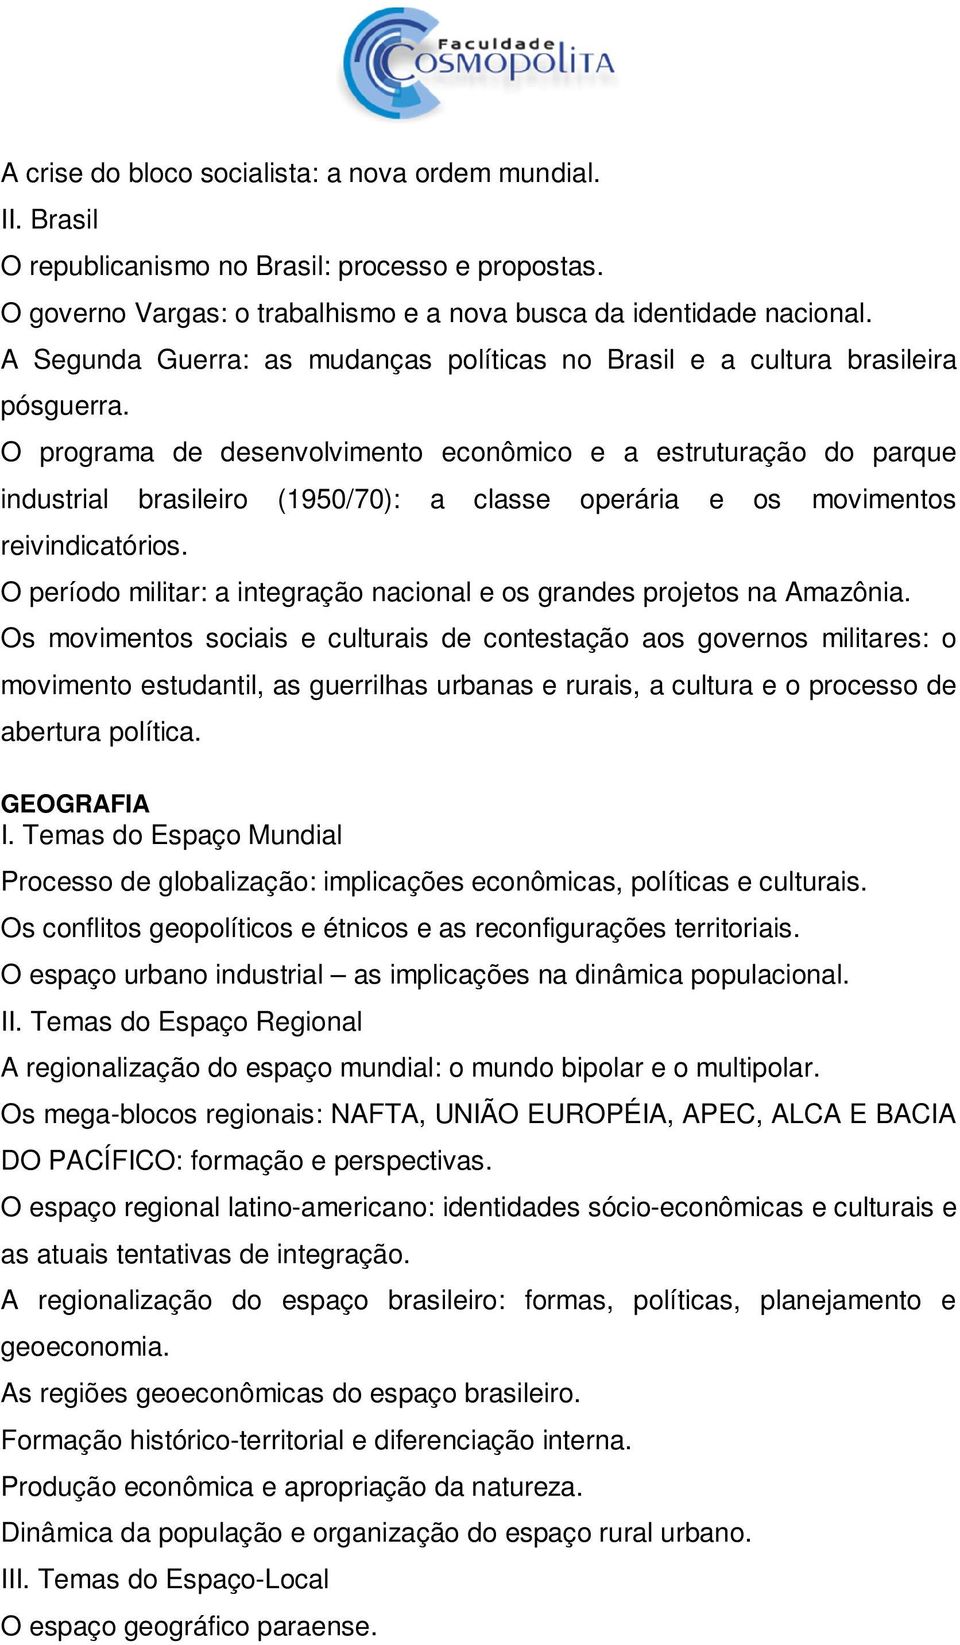 O programa de desenvolvimento econômico e a estruturação do parque industrial brasileiro (1950/70): a classe operária e os movimentos reivindicatórios.